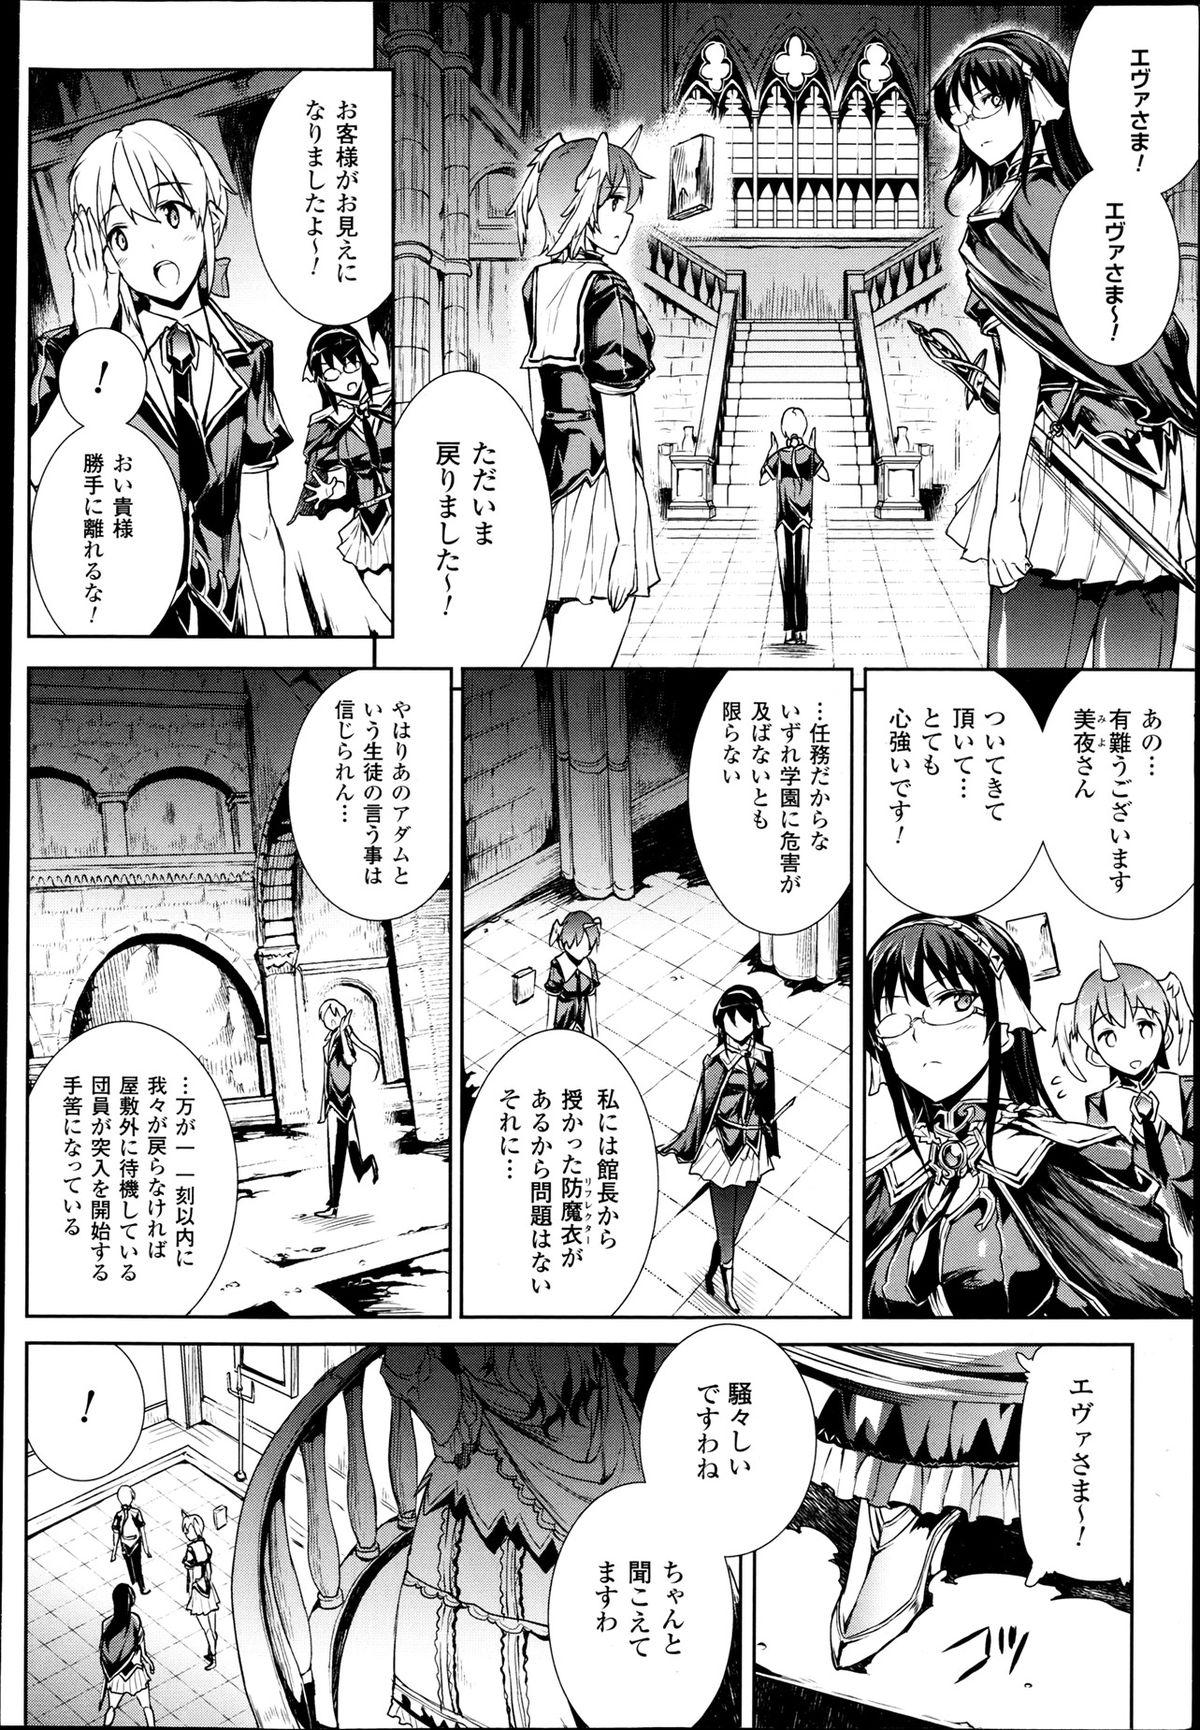 [Erect Sawaru] Shinkyoku no Grimoire -PANDRA saga 2nd story- Ch 07-9.5 1